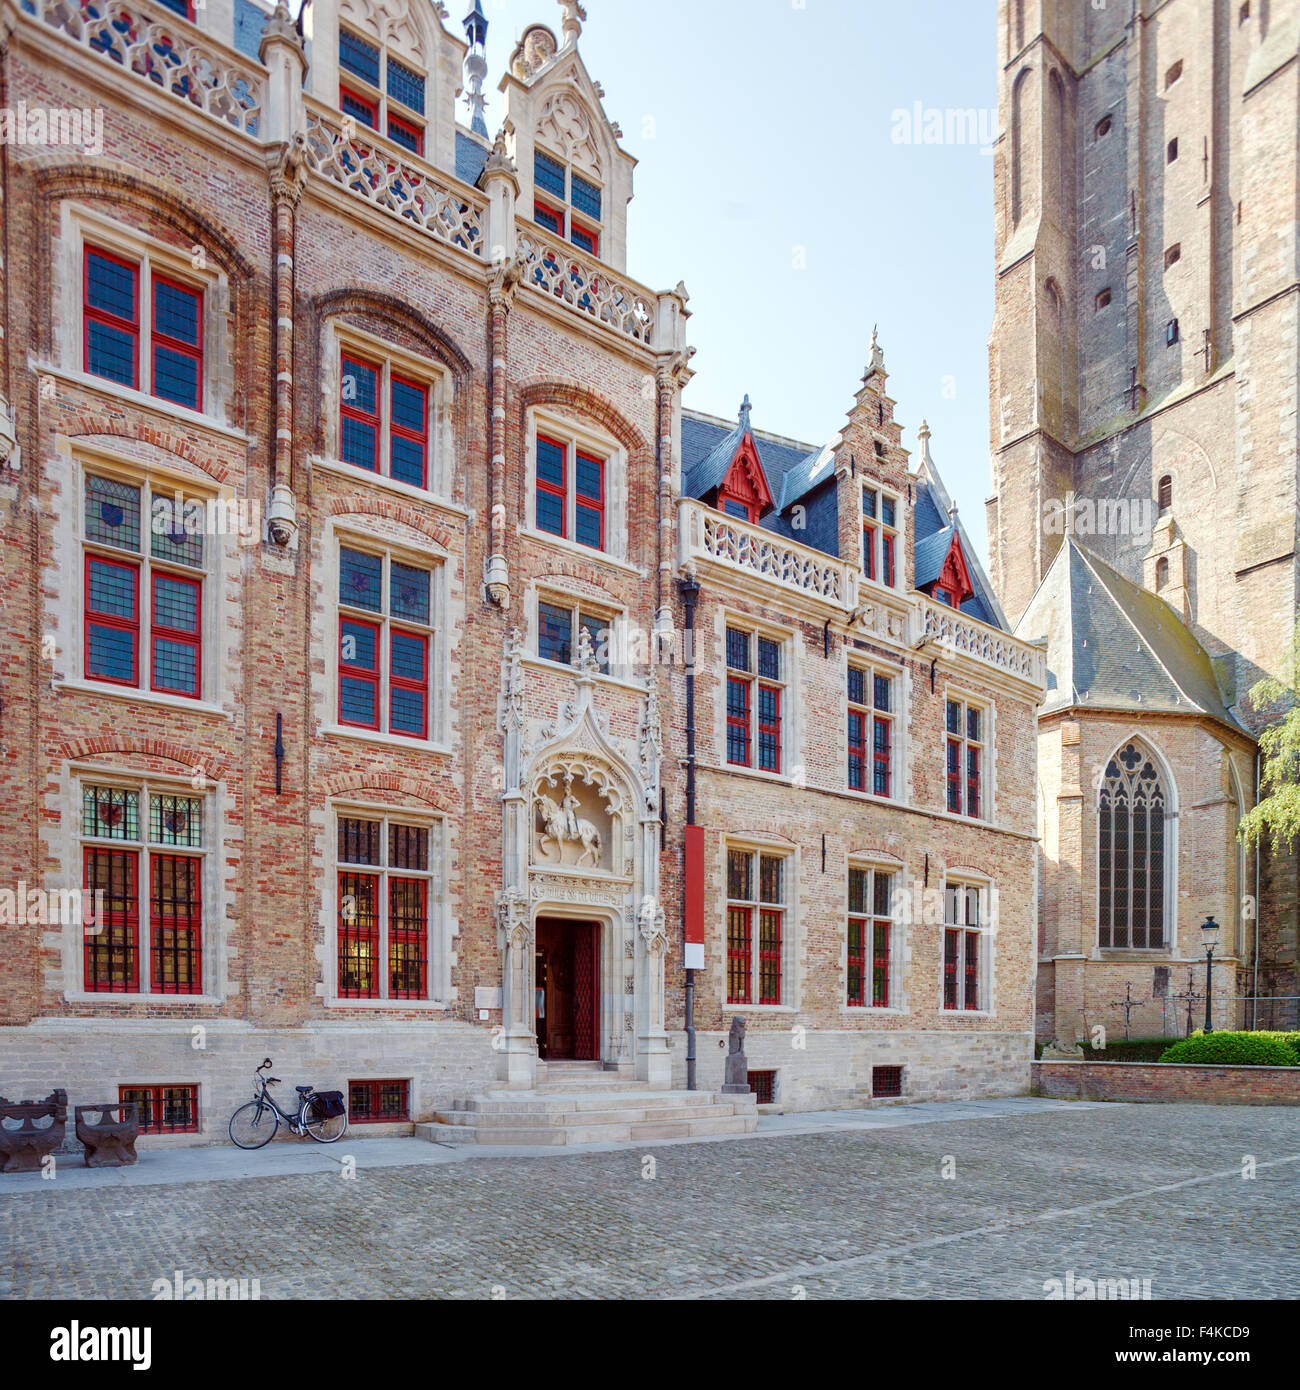 Gruuthusemuseum - ancien palais des seigneurs de Gruuthuse (15e siècle), Bruges, Belgique Banque D'Images